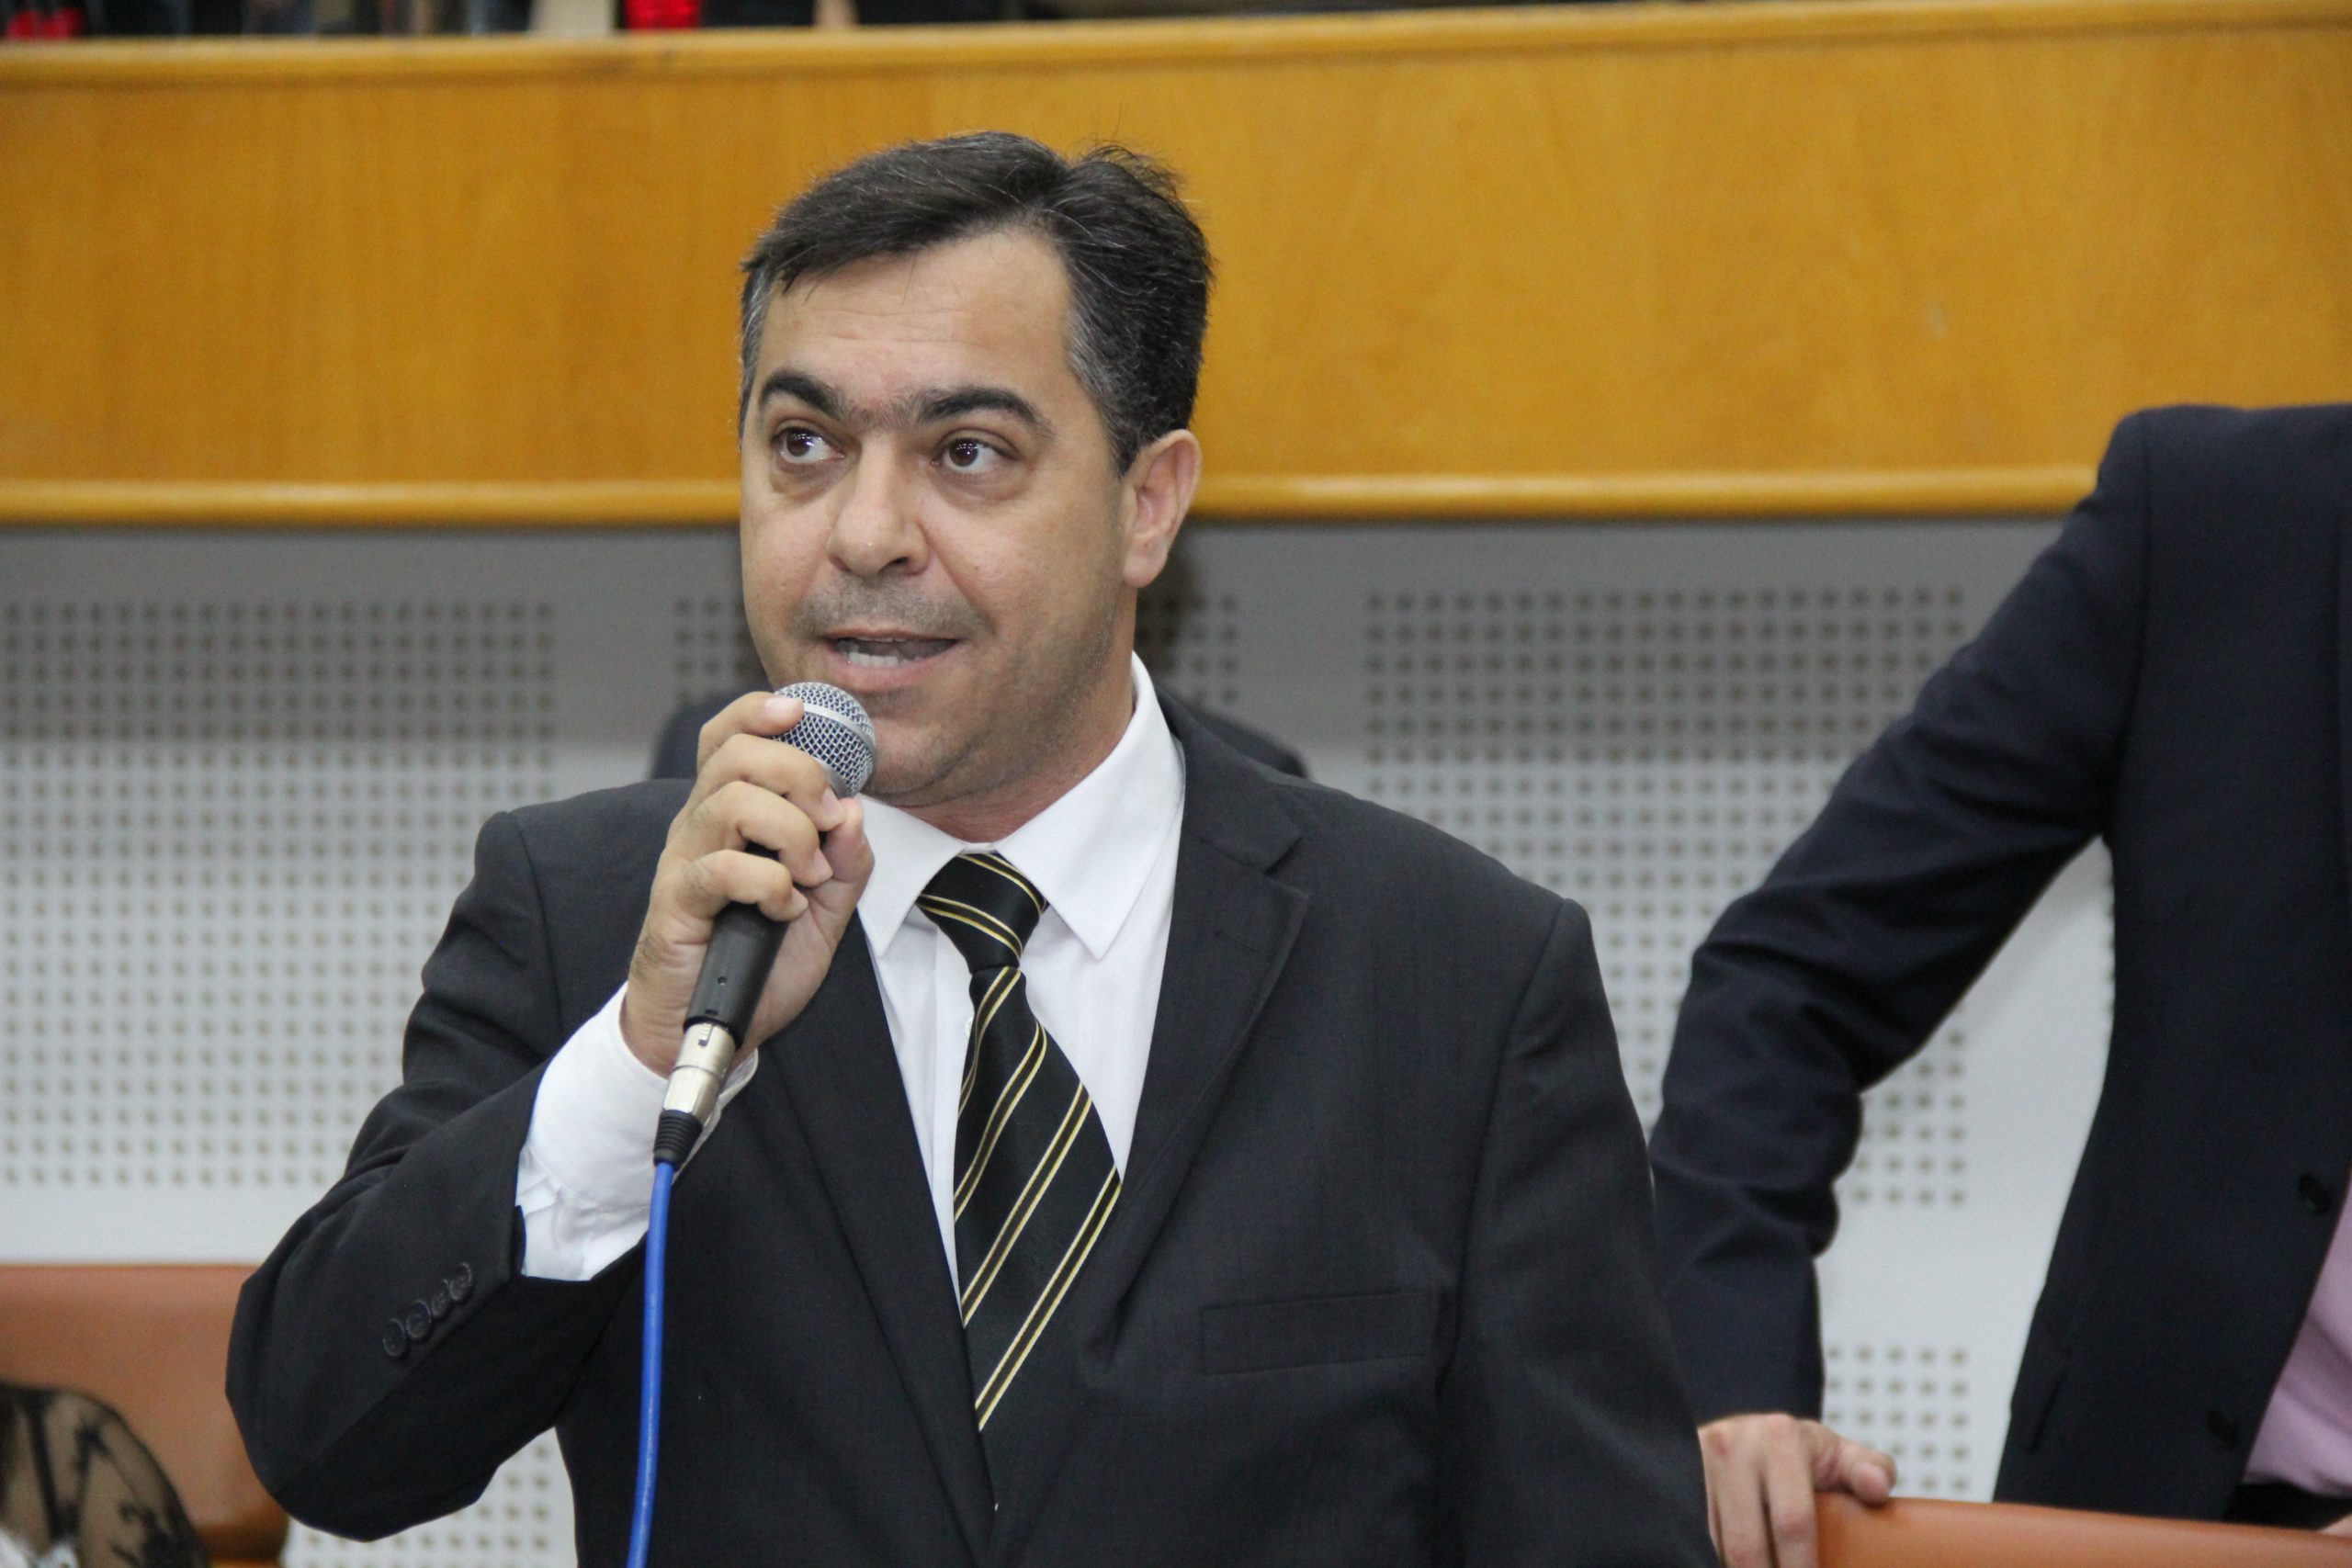 Estranhamento entre vereador Kleybe e prefeito Rogério persiste